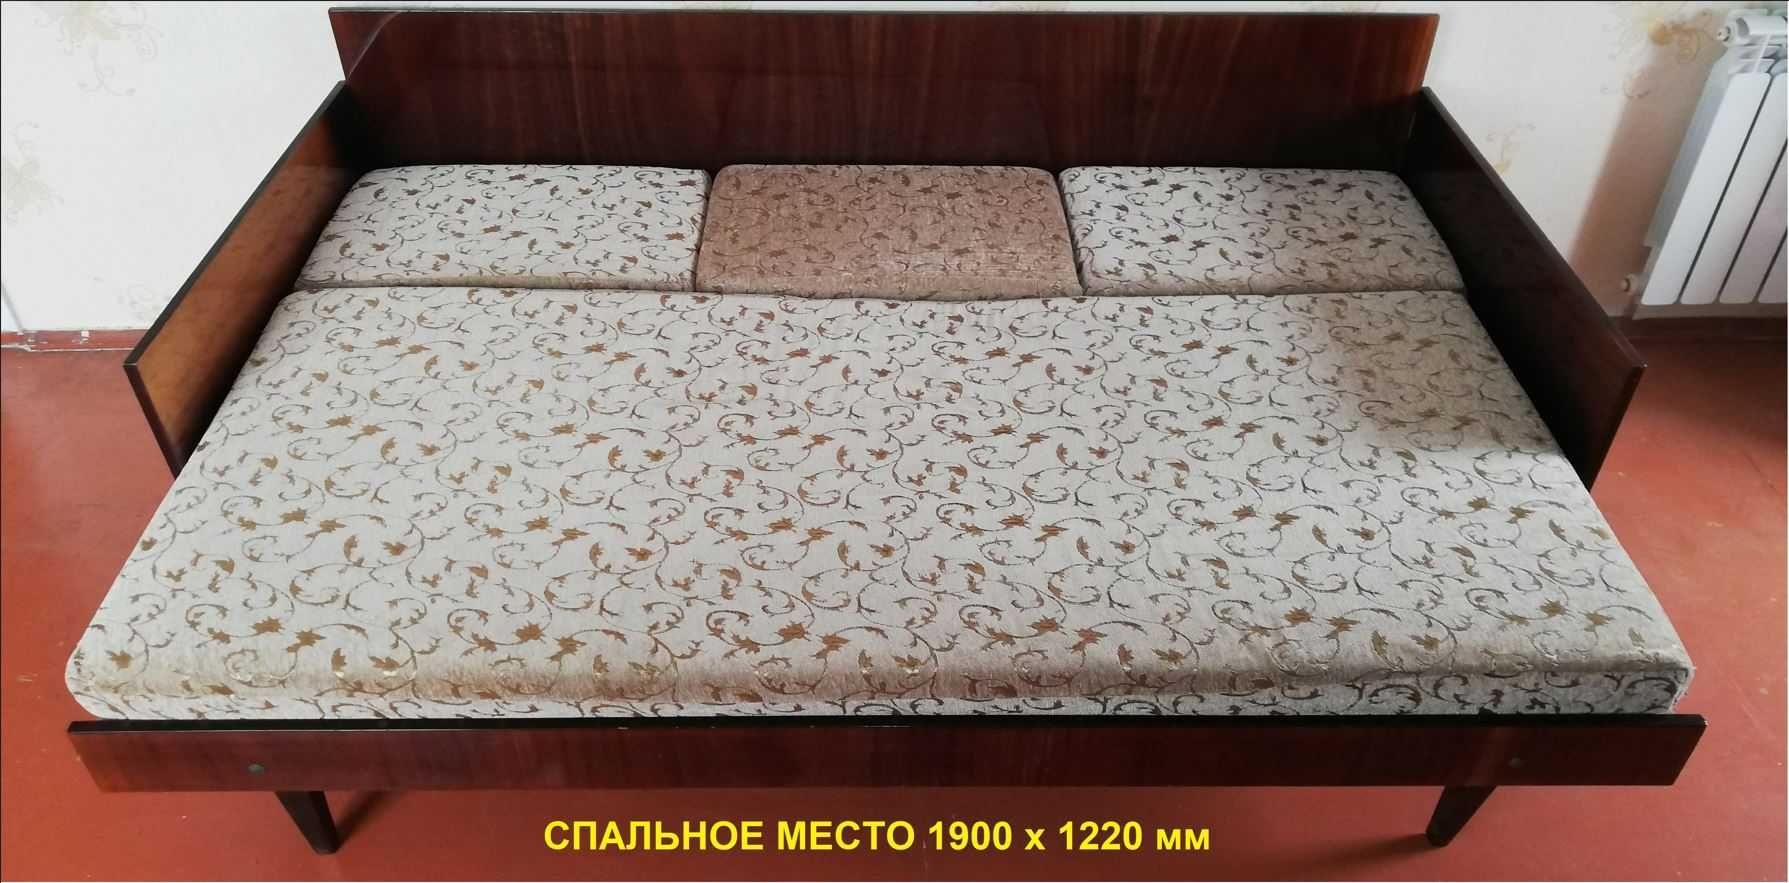 Софа с поддоном раскладная спальное место 1900х1220 мм 80-е года СССР